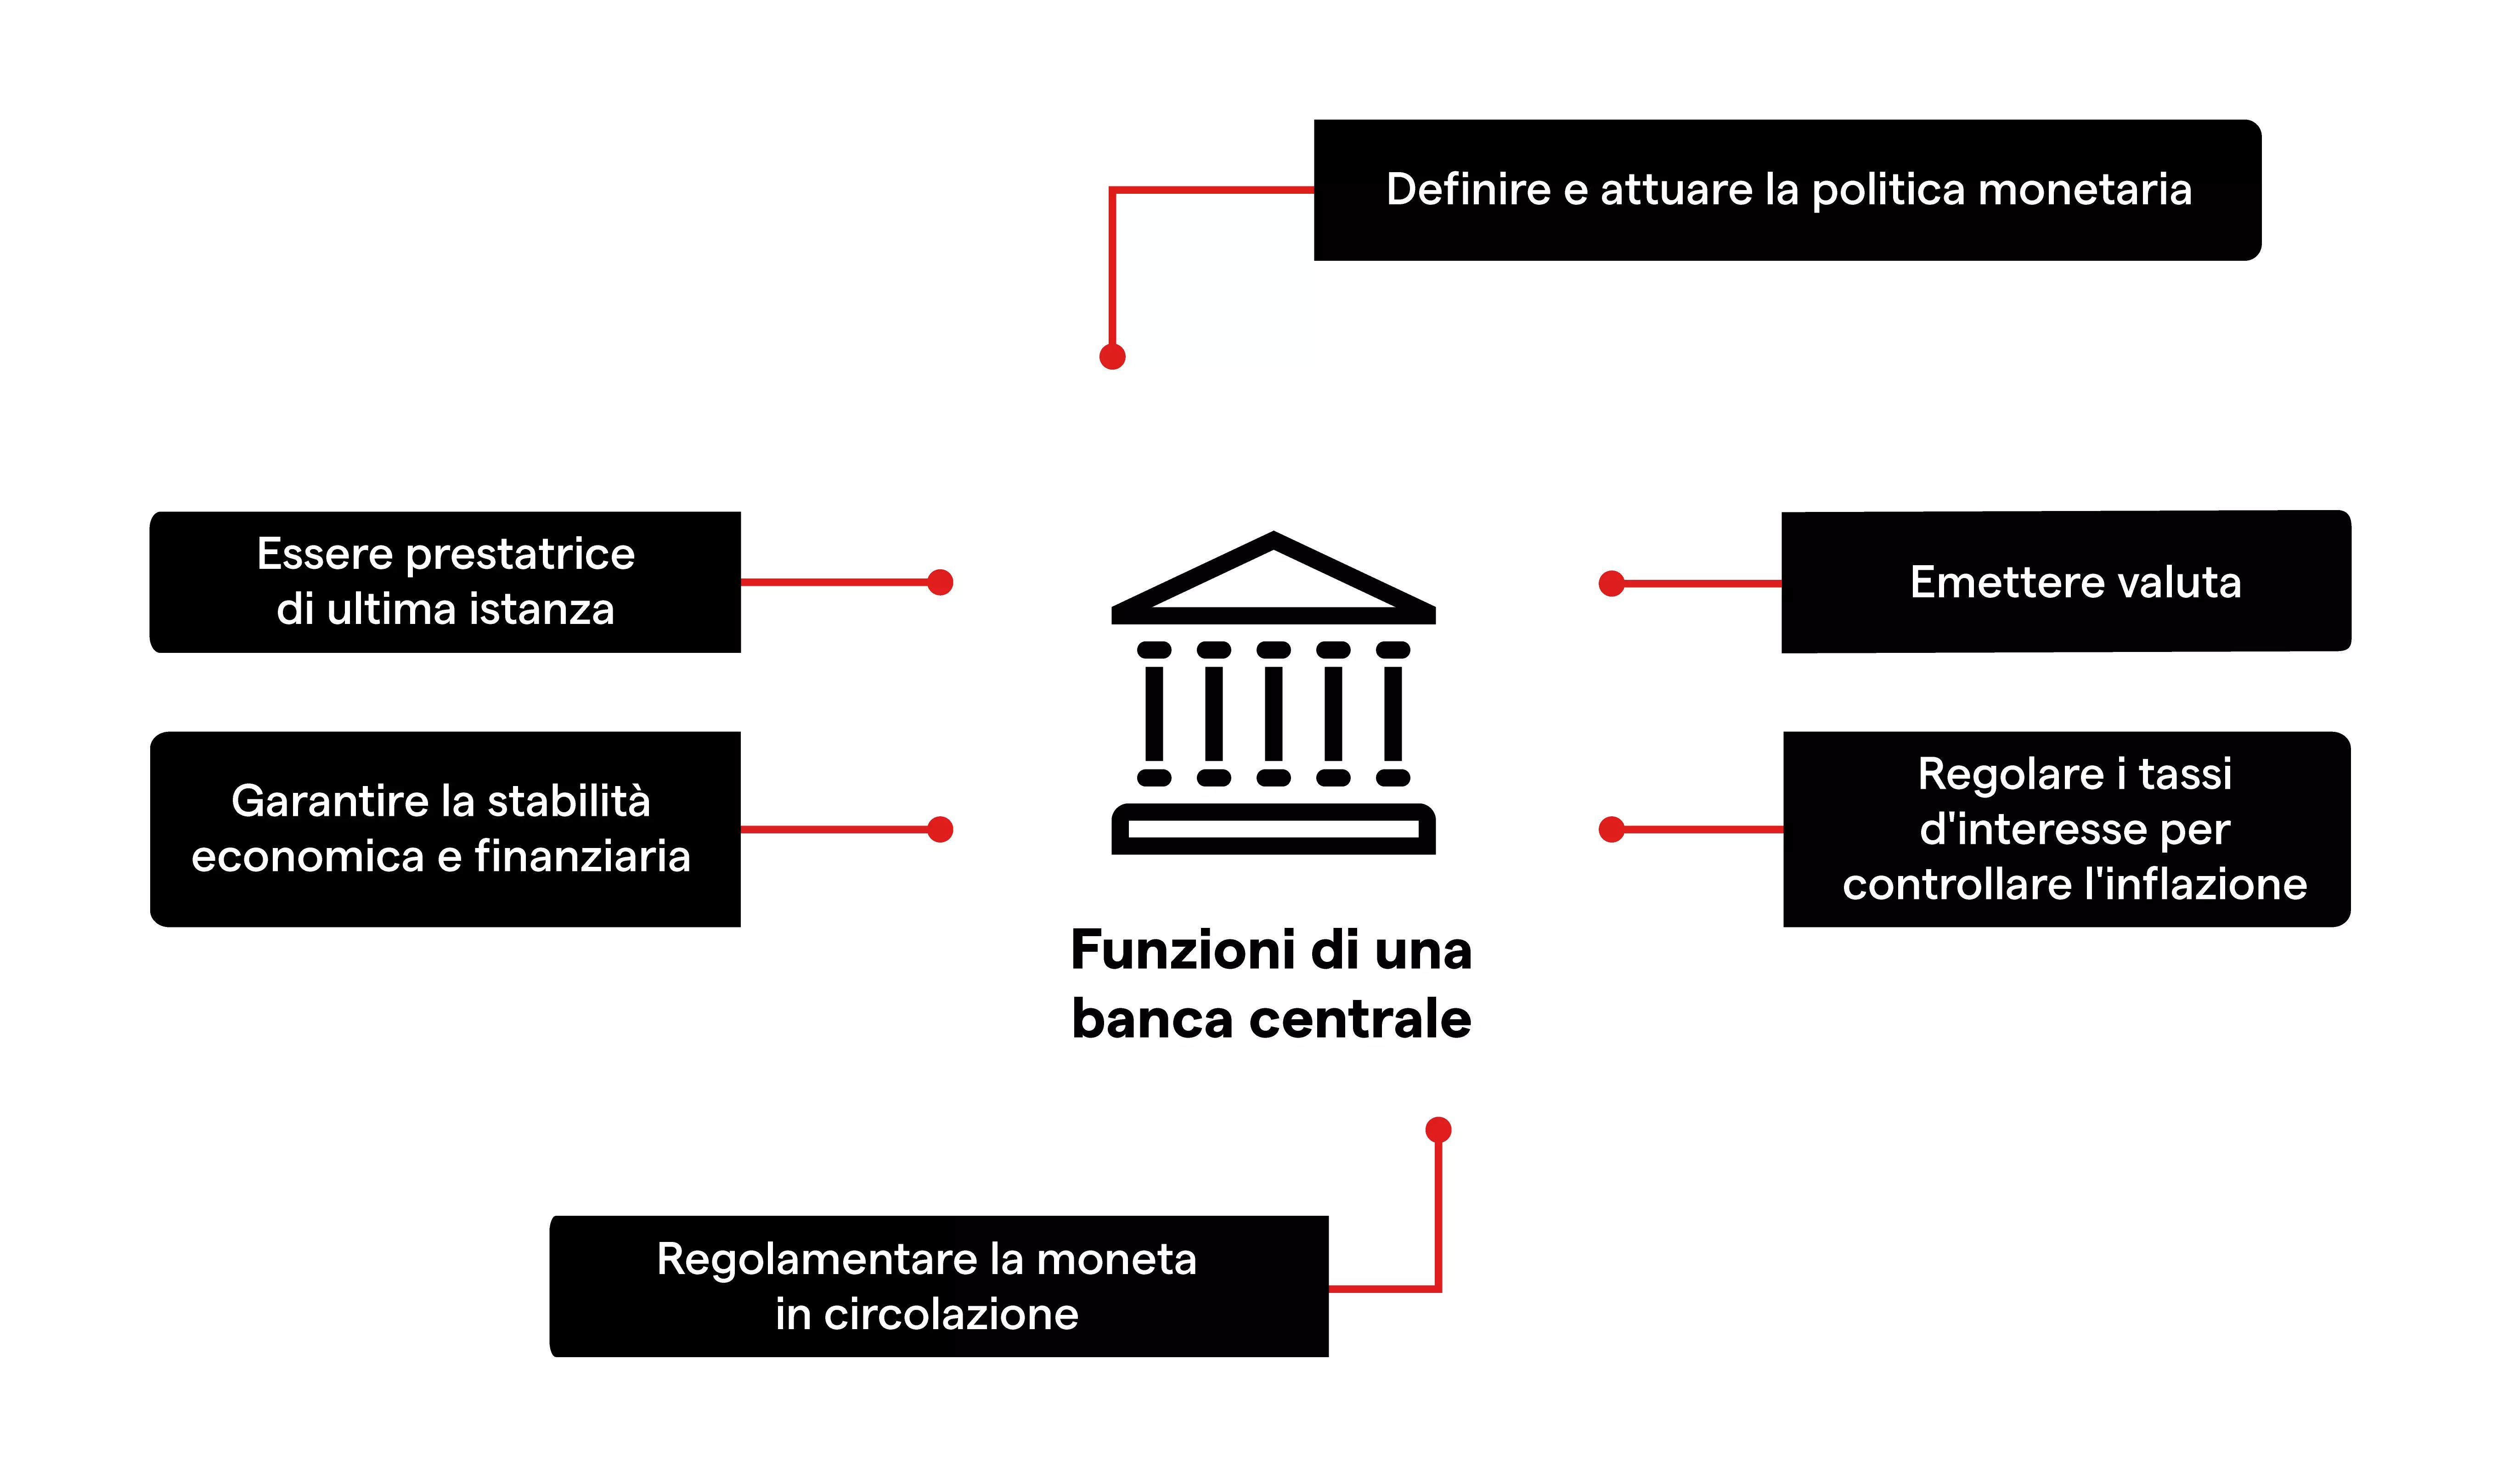 Funzioni di una banca centrale